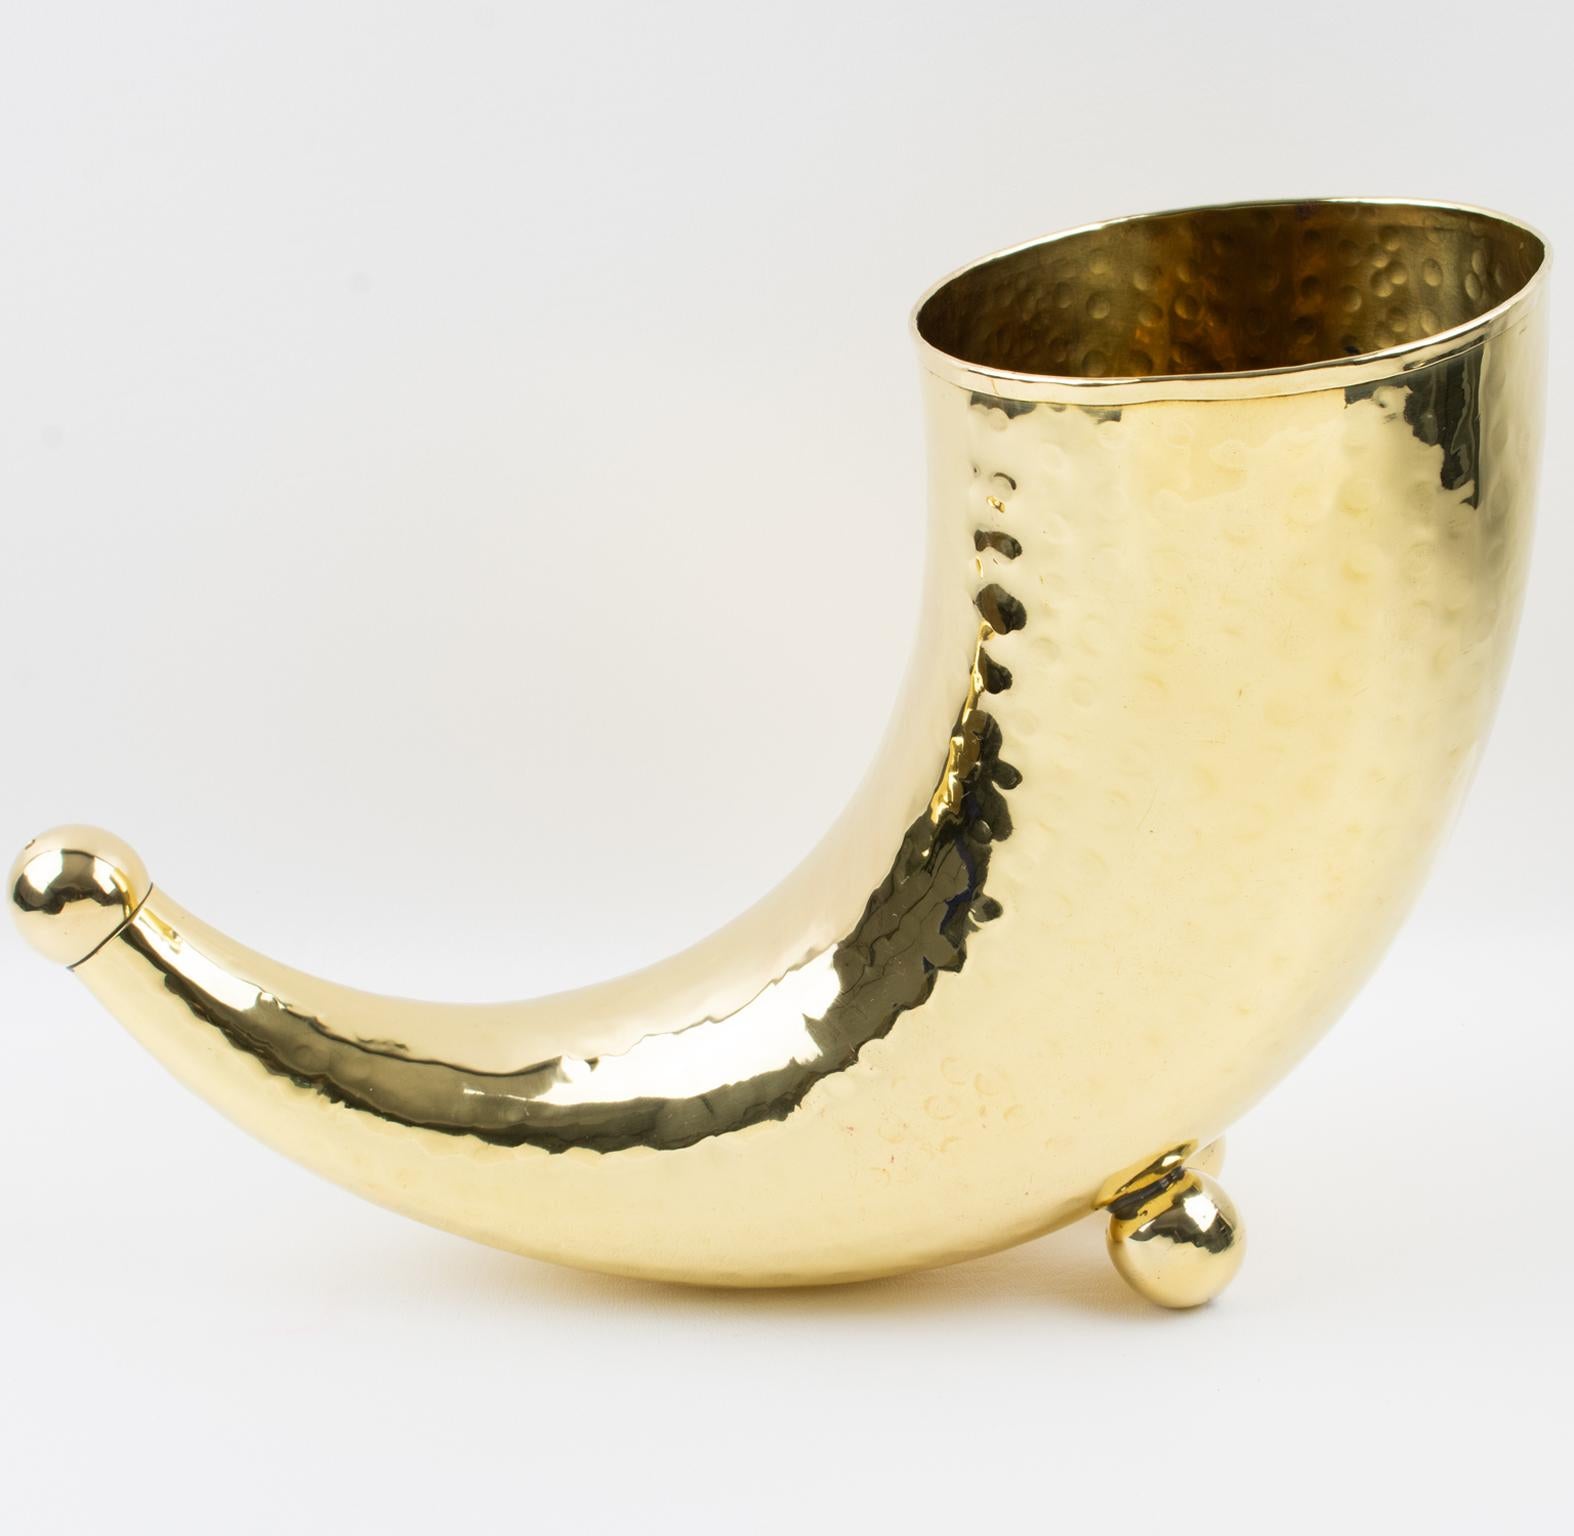 Dieser stilvolle modernistische Weinkühler oder diese Vase aus Messing bietet eine ultra-schicke, vielseitige Verwendung mit einem skurrilen, minimalistischen Füllhorn mit Perlenfüßen und hochglänzendem Metall mit leicht gehämmertem Finish. Viel